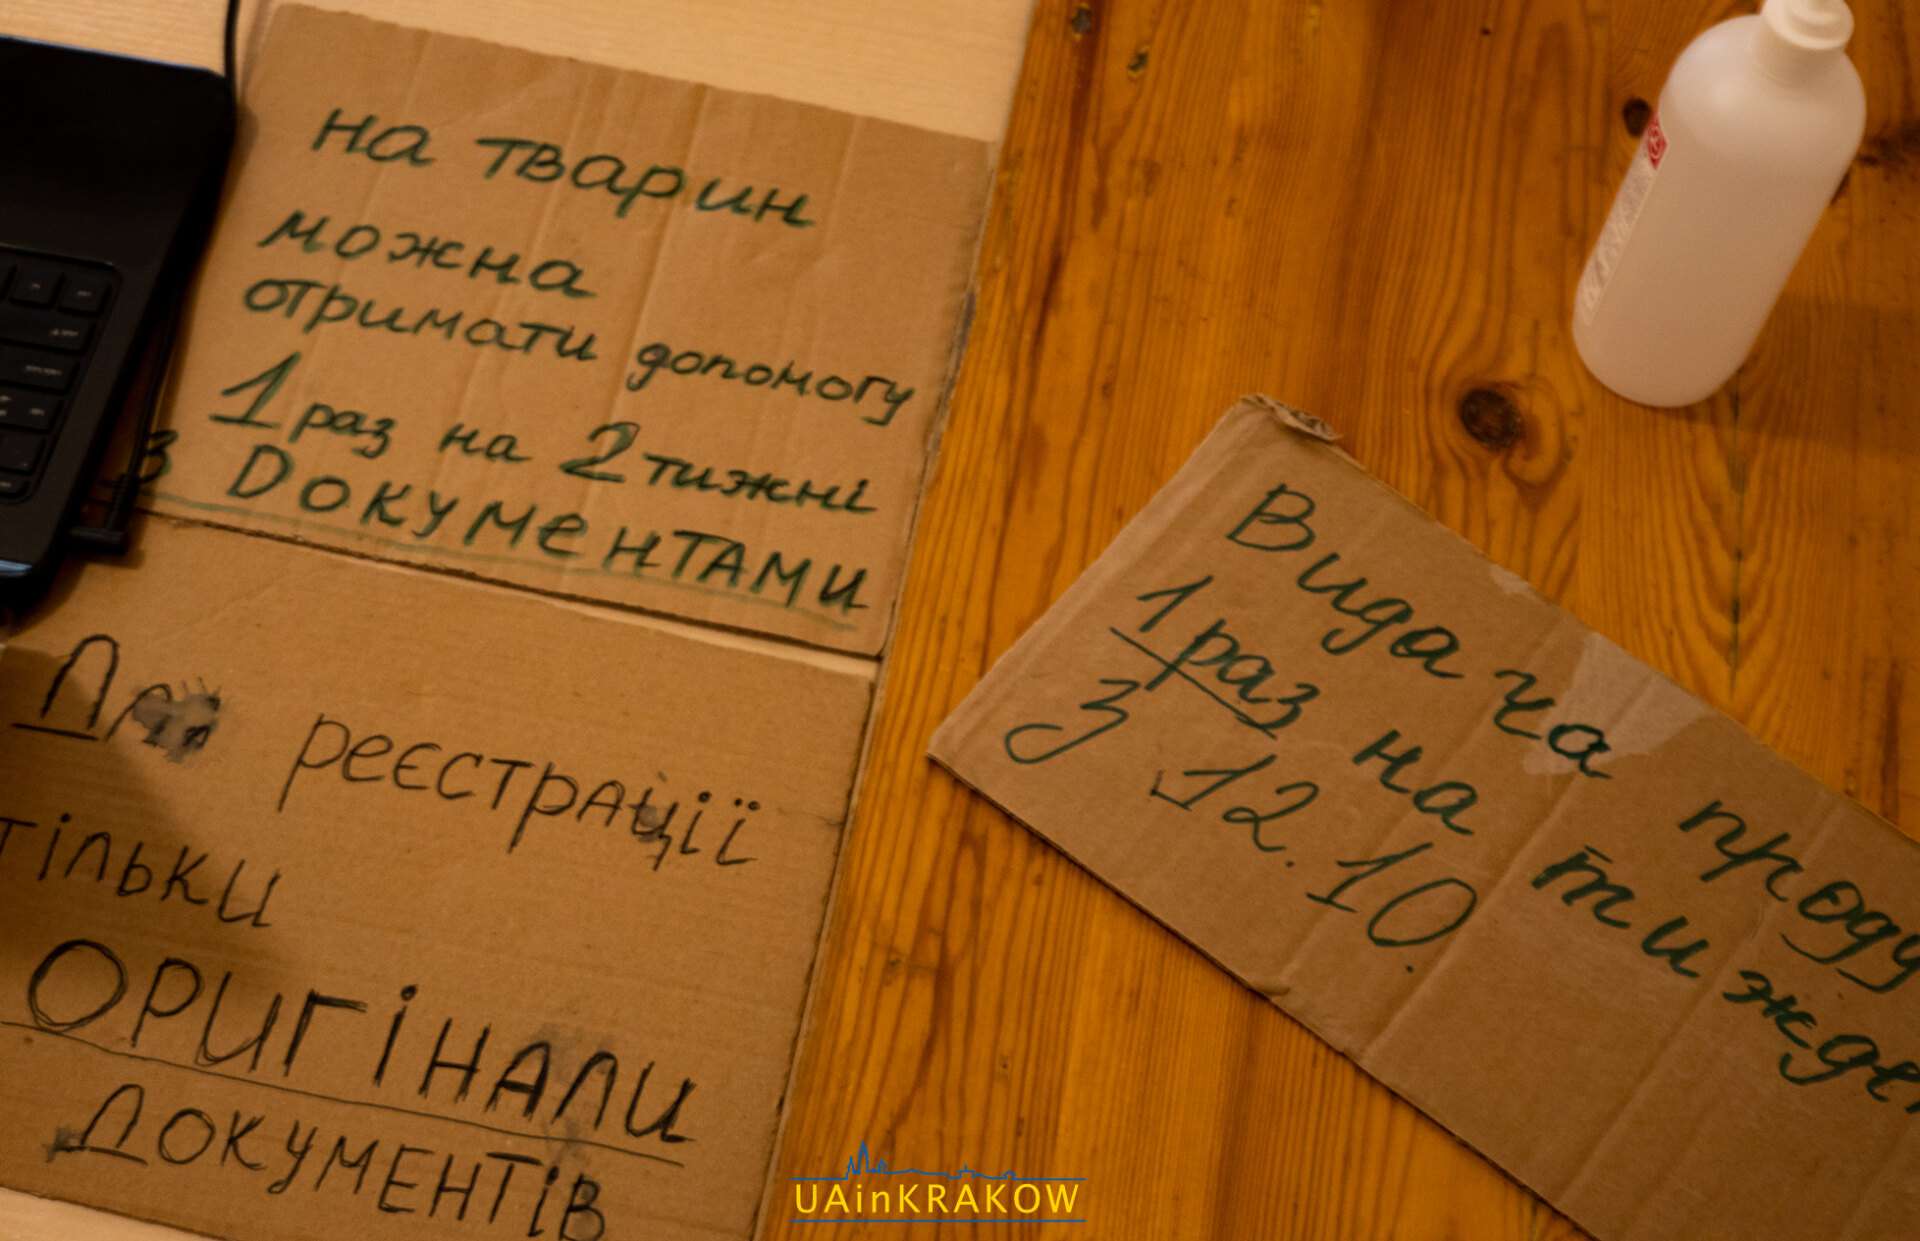 Їжа, одяг та житло для українців — три волонтерські ініціативи під одним дахом  L A UAinKrakow.pl